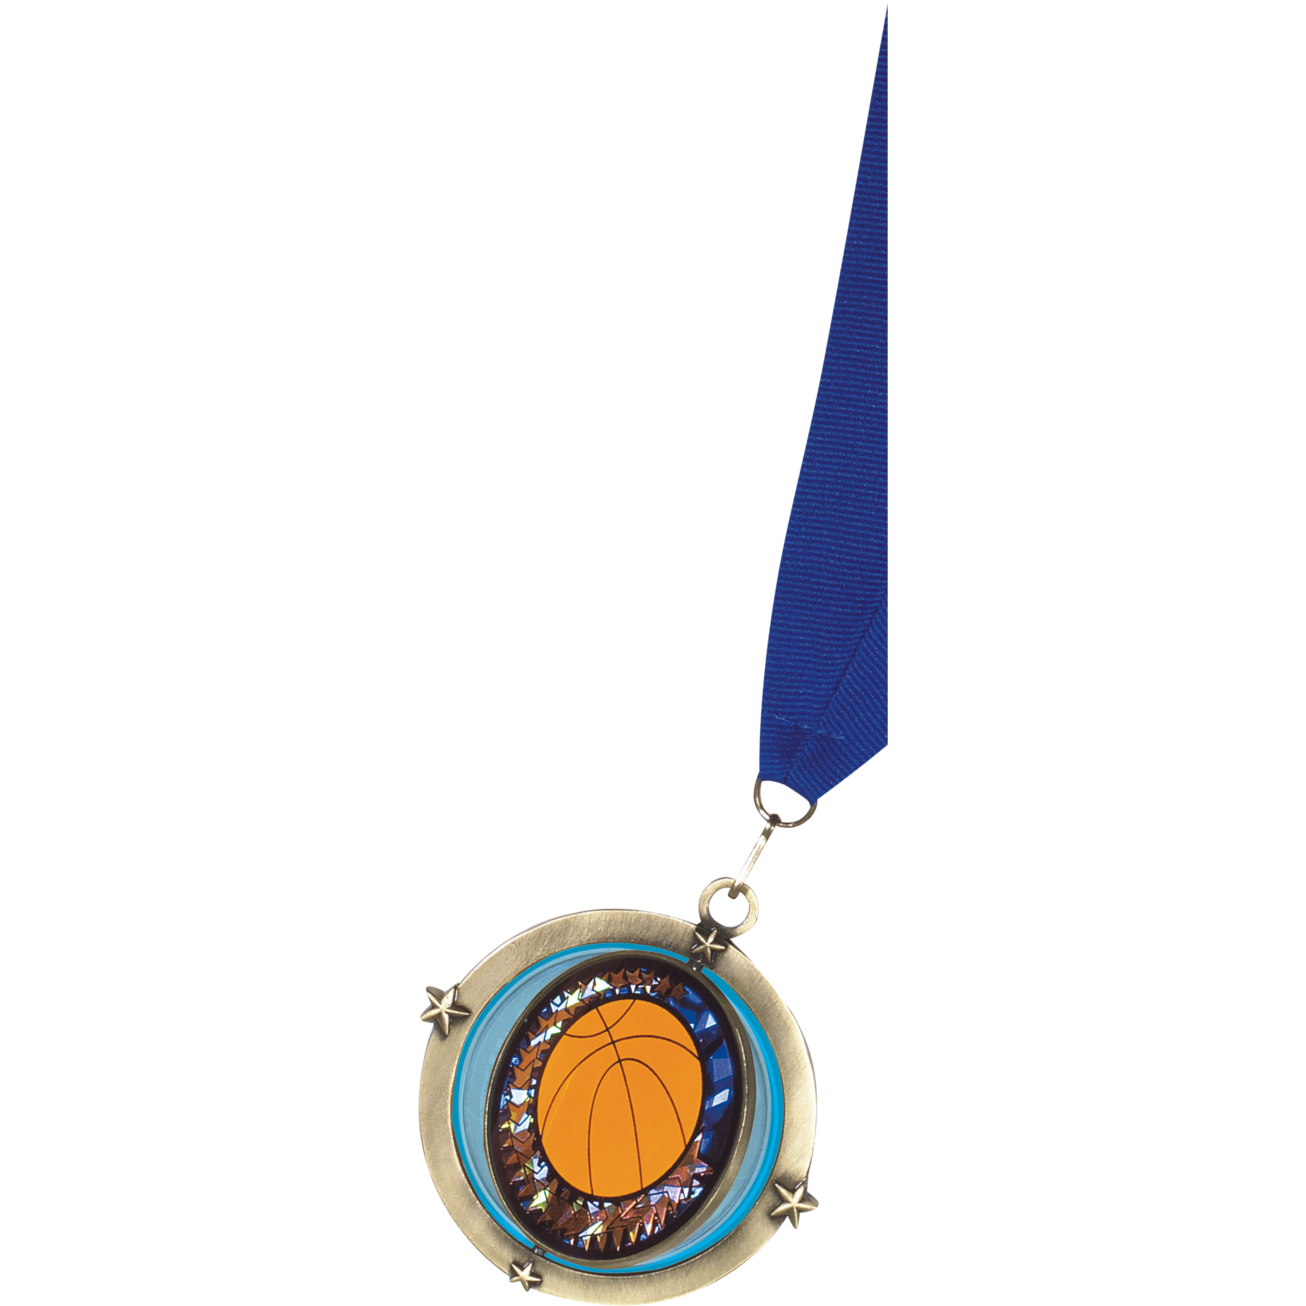 Spinner Medal